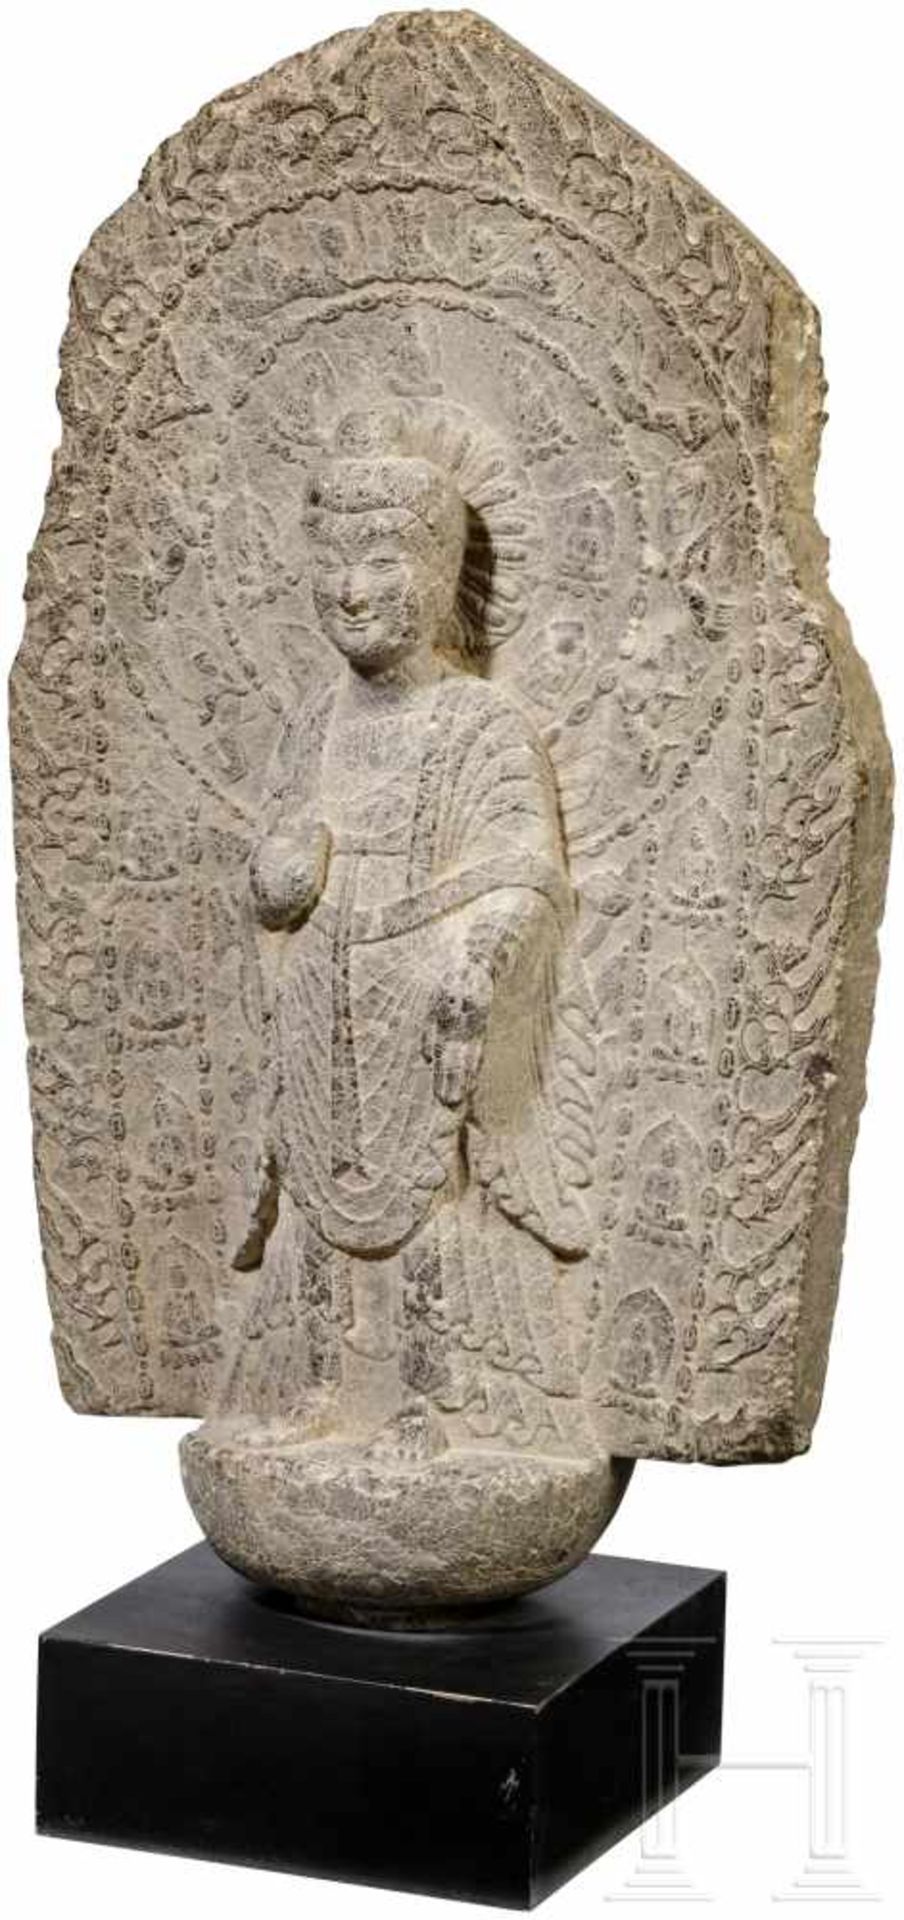 Figur eines stehenden Buddhas, China, nördliche Wei-Dynastie, datiert 526Grauer Kalkstein. In